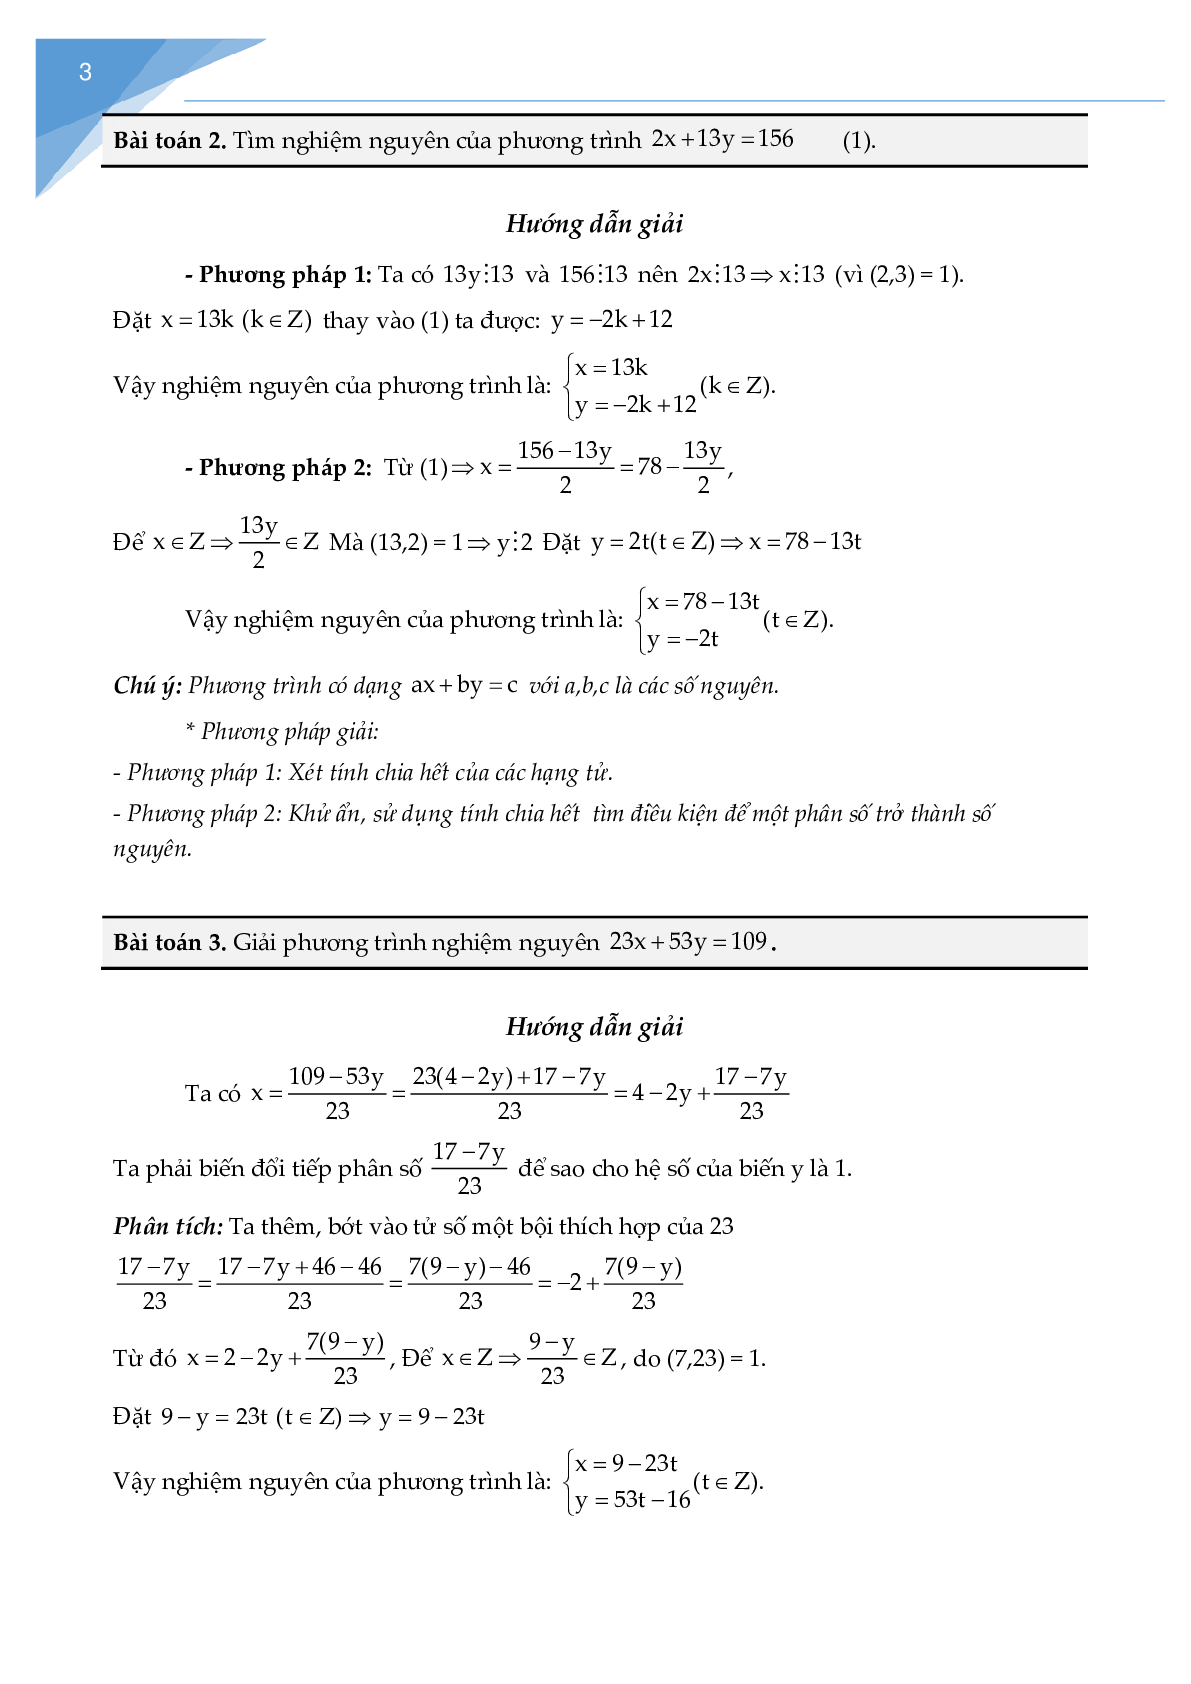 Chuyên đề phương trình nghiệm nguyên (trang 2)